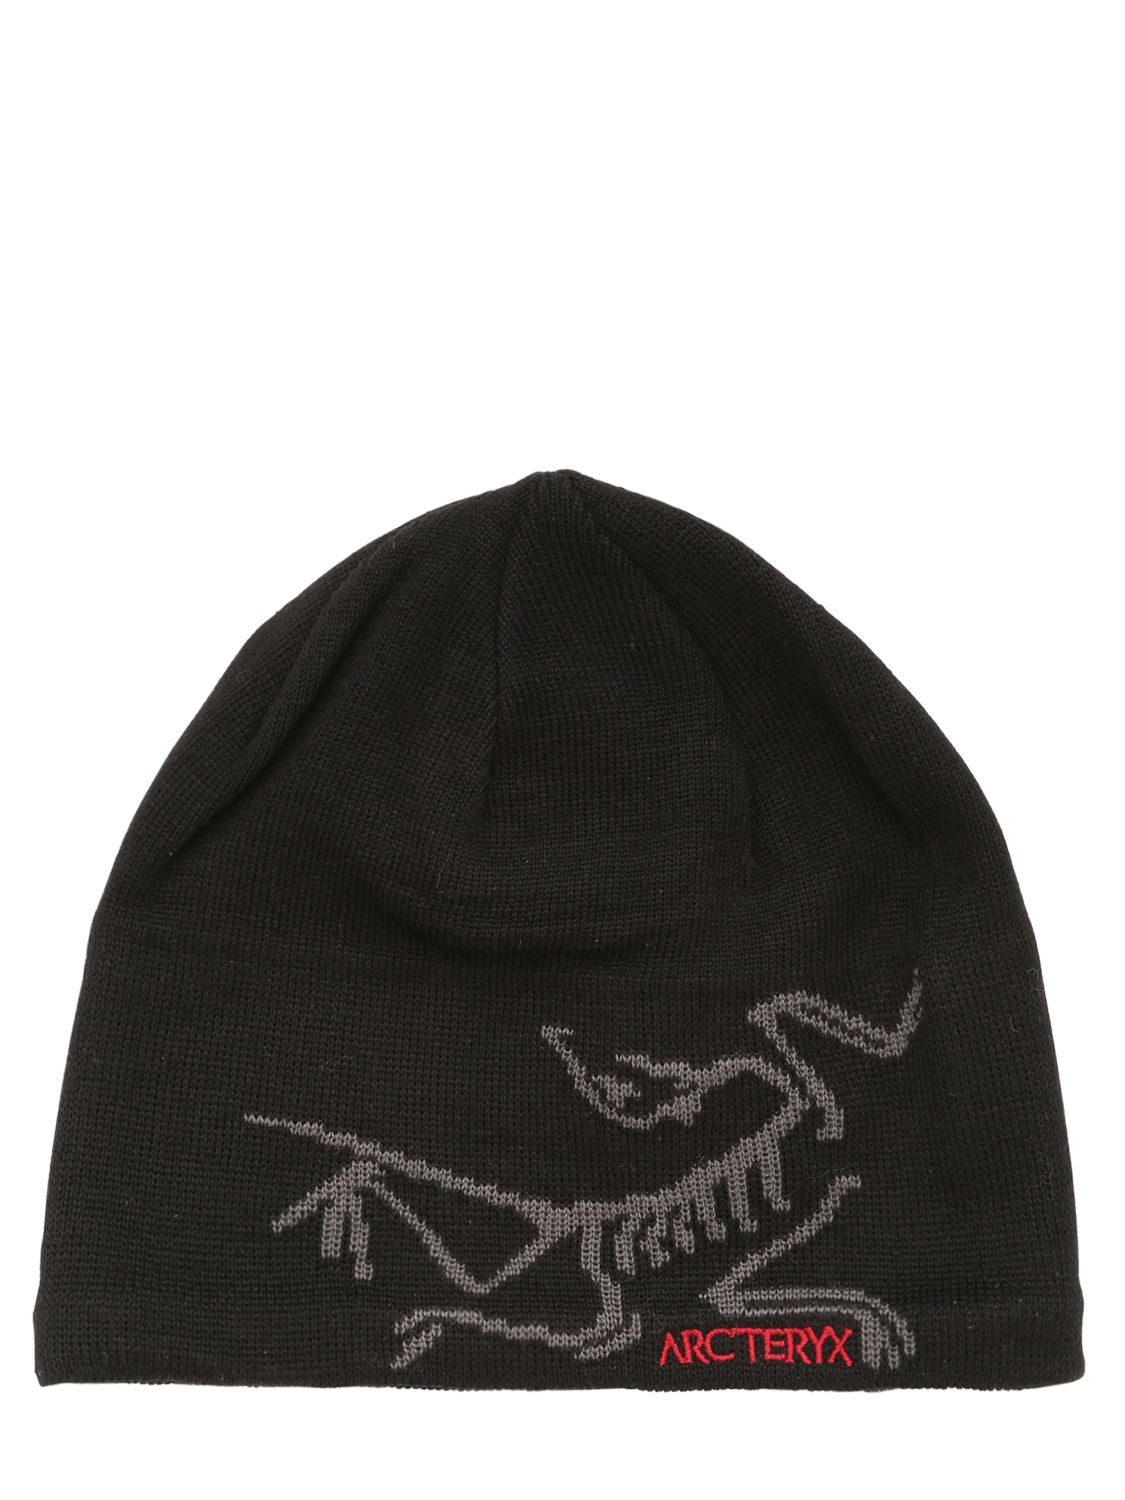 Arc'teryx Bird Head Toque Wool Blend Hat in Black for Men | Lyst